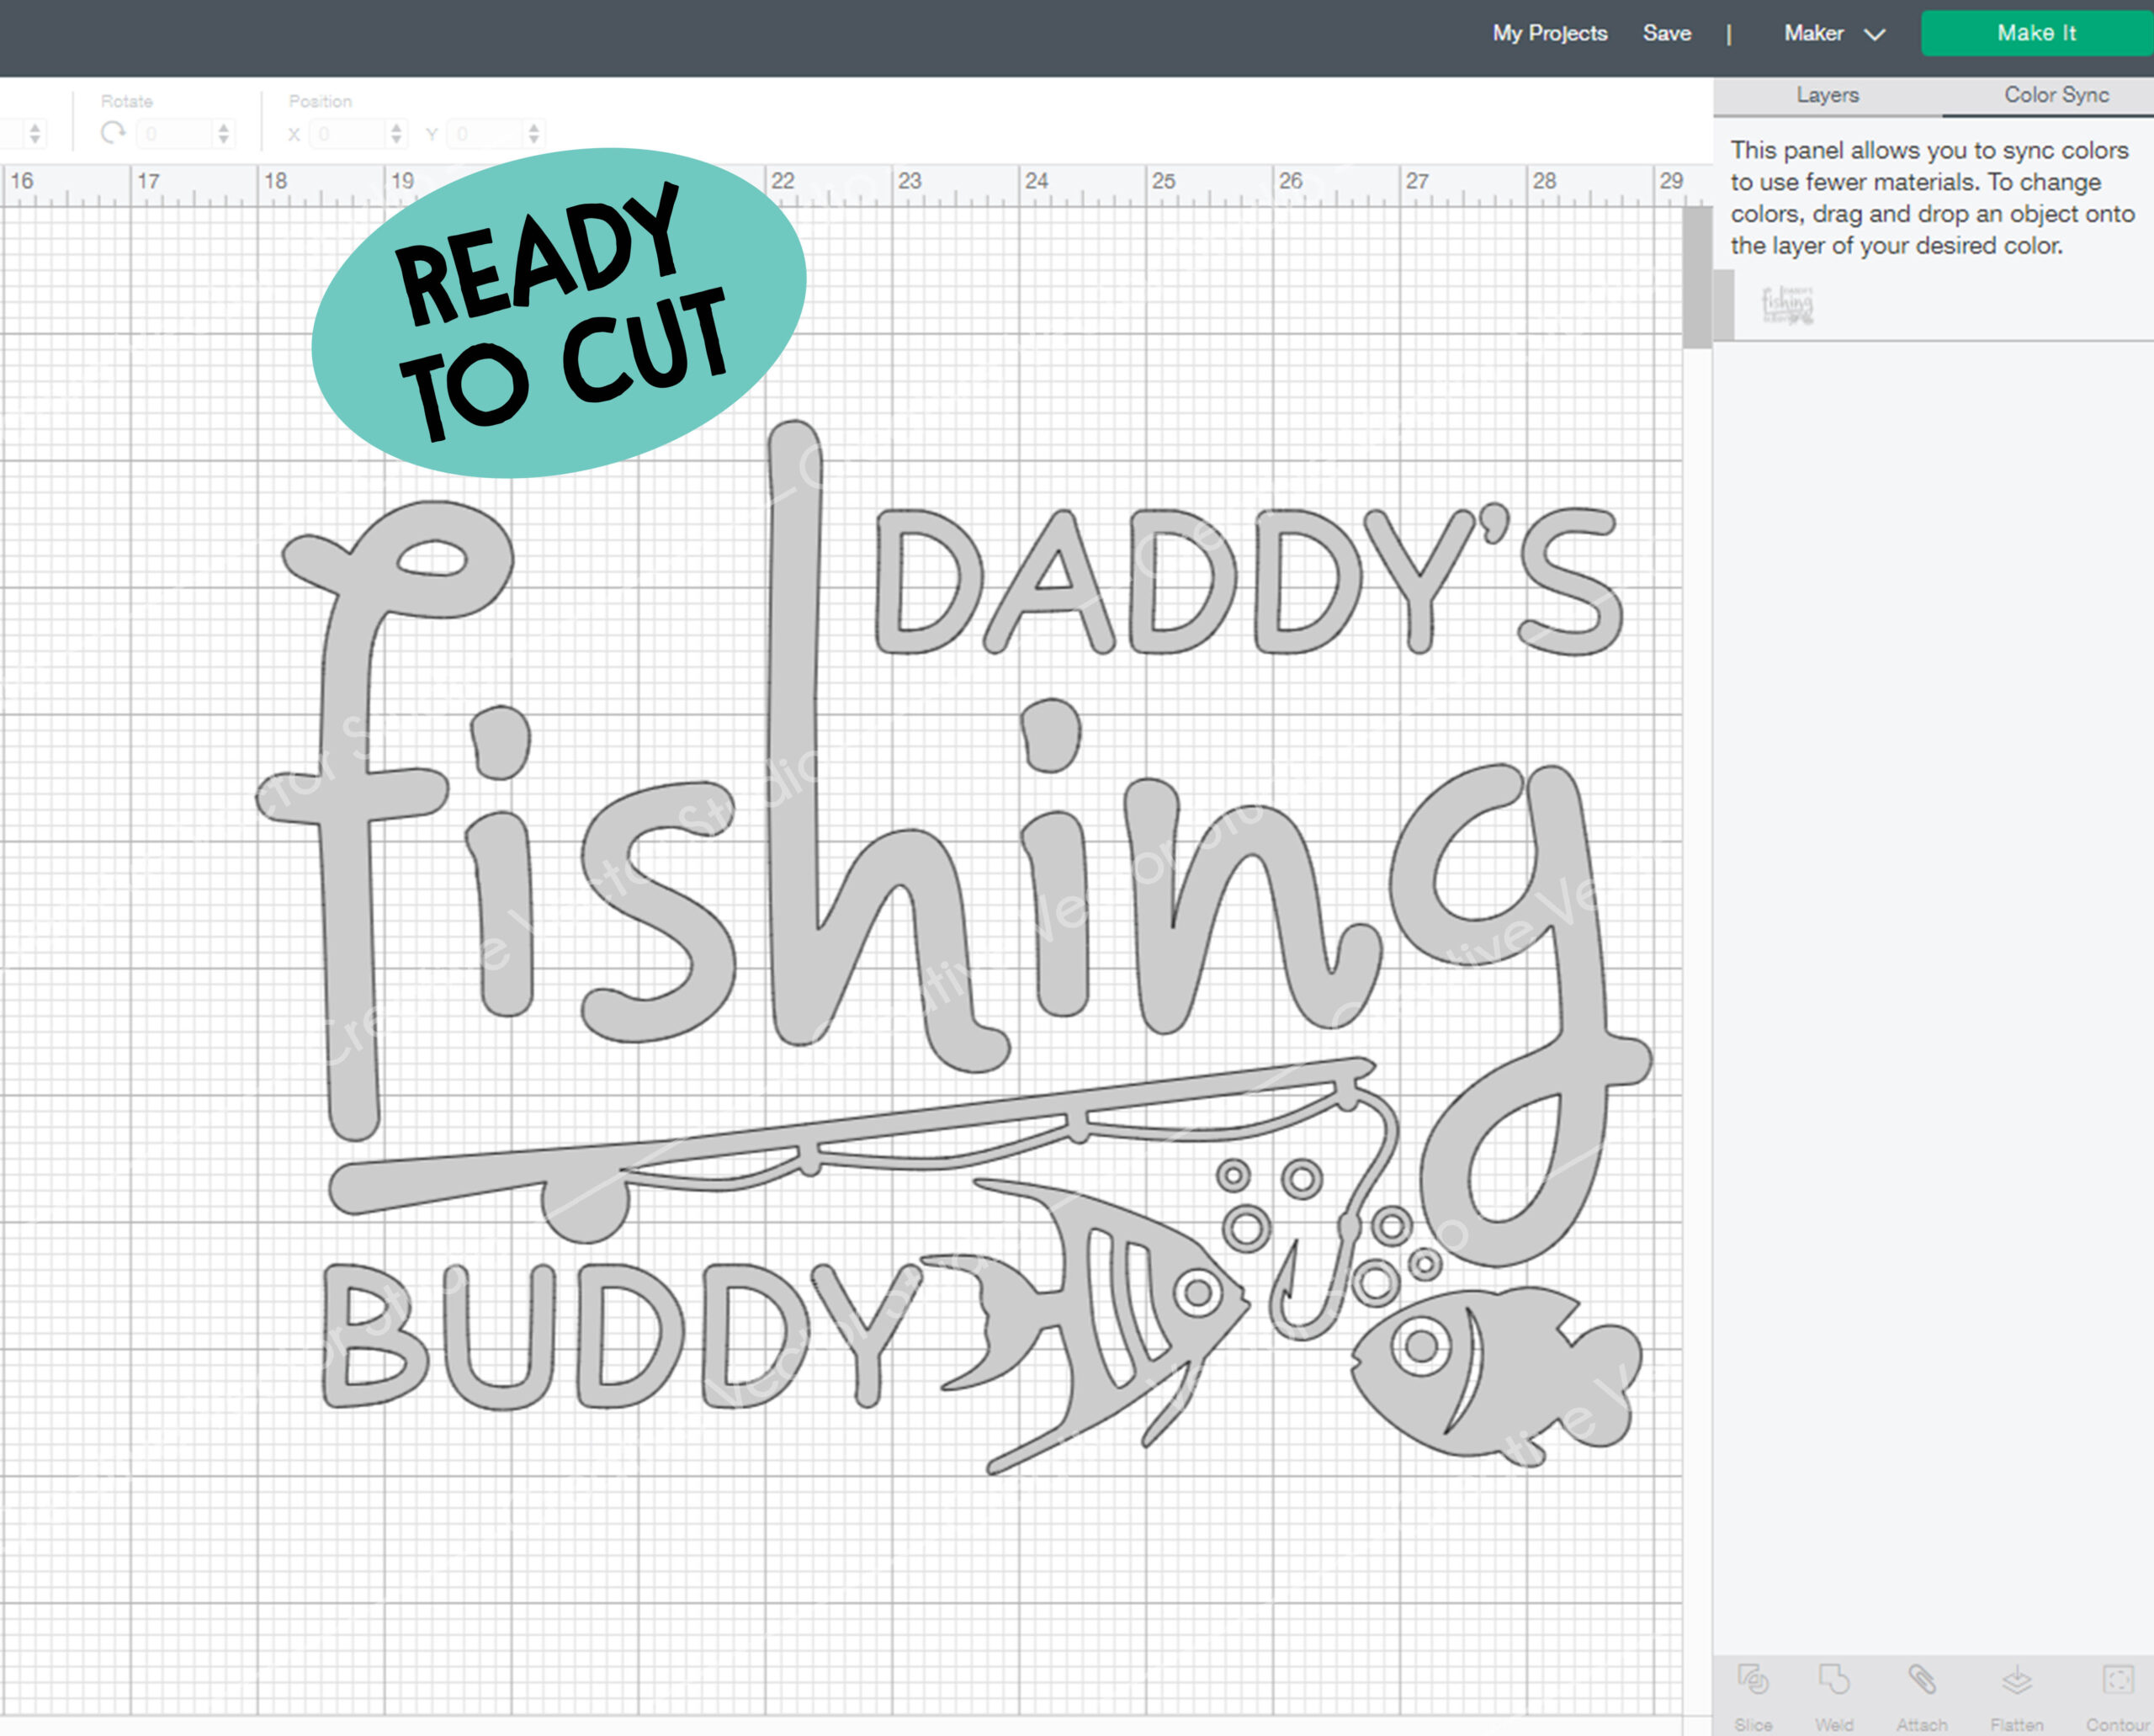 Daddy's Fishing Buddy SVG